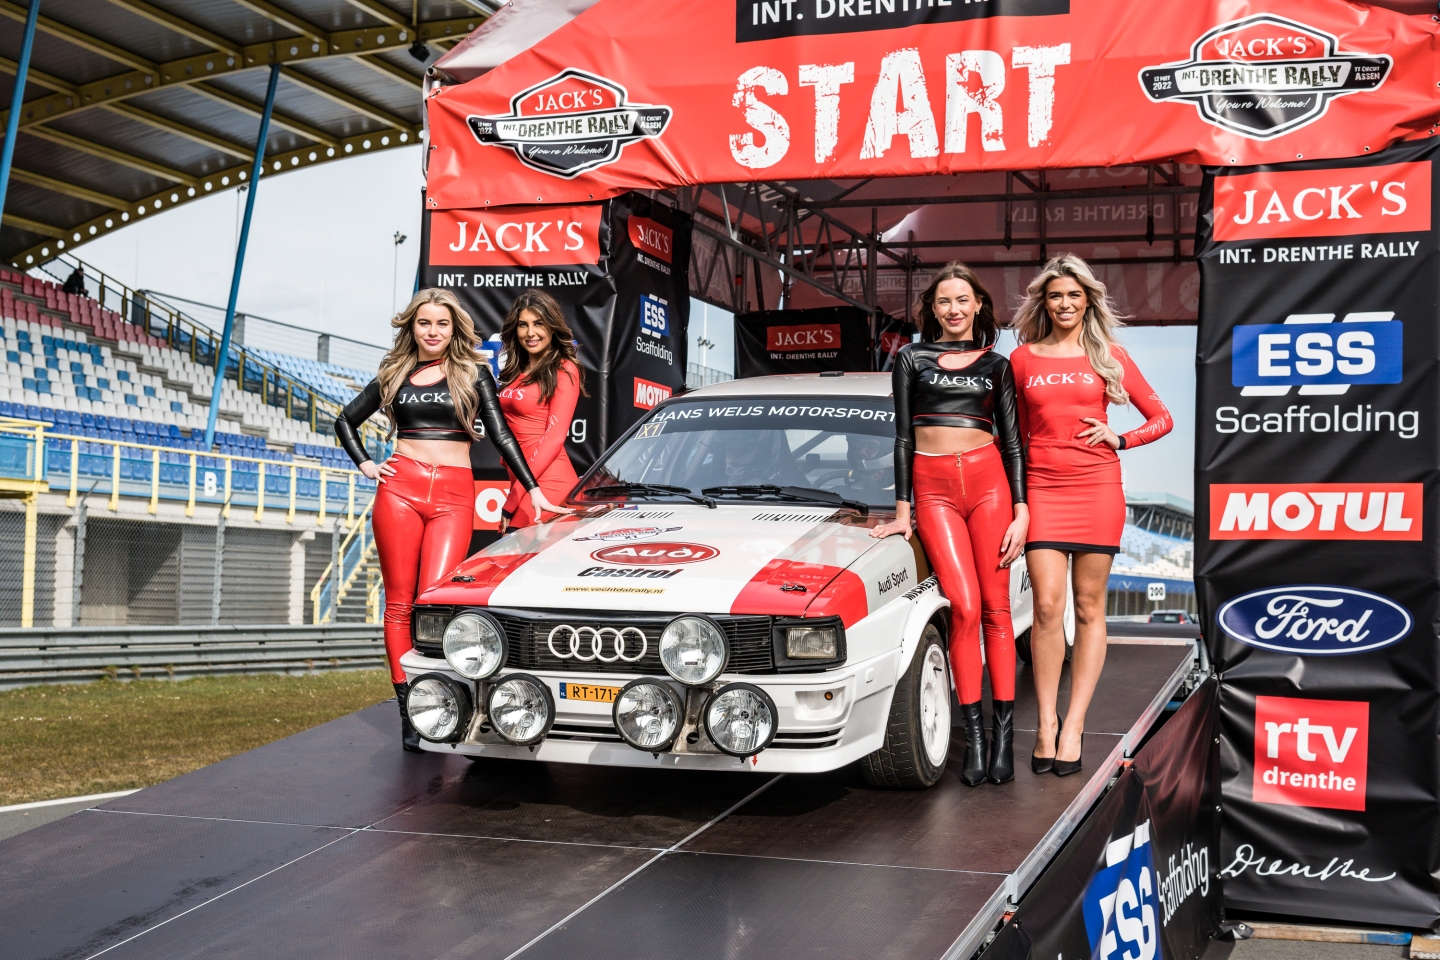 Nederlandse topteams in actie op TT-circuit tijdens JACK'S Int. Drenthe Rally